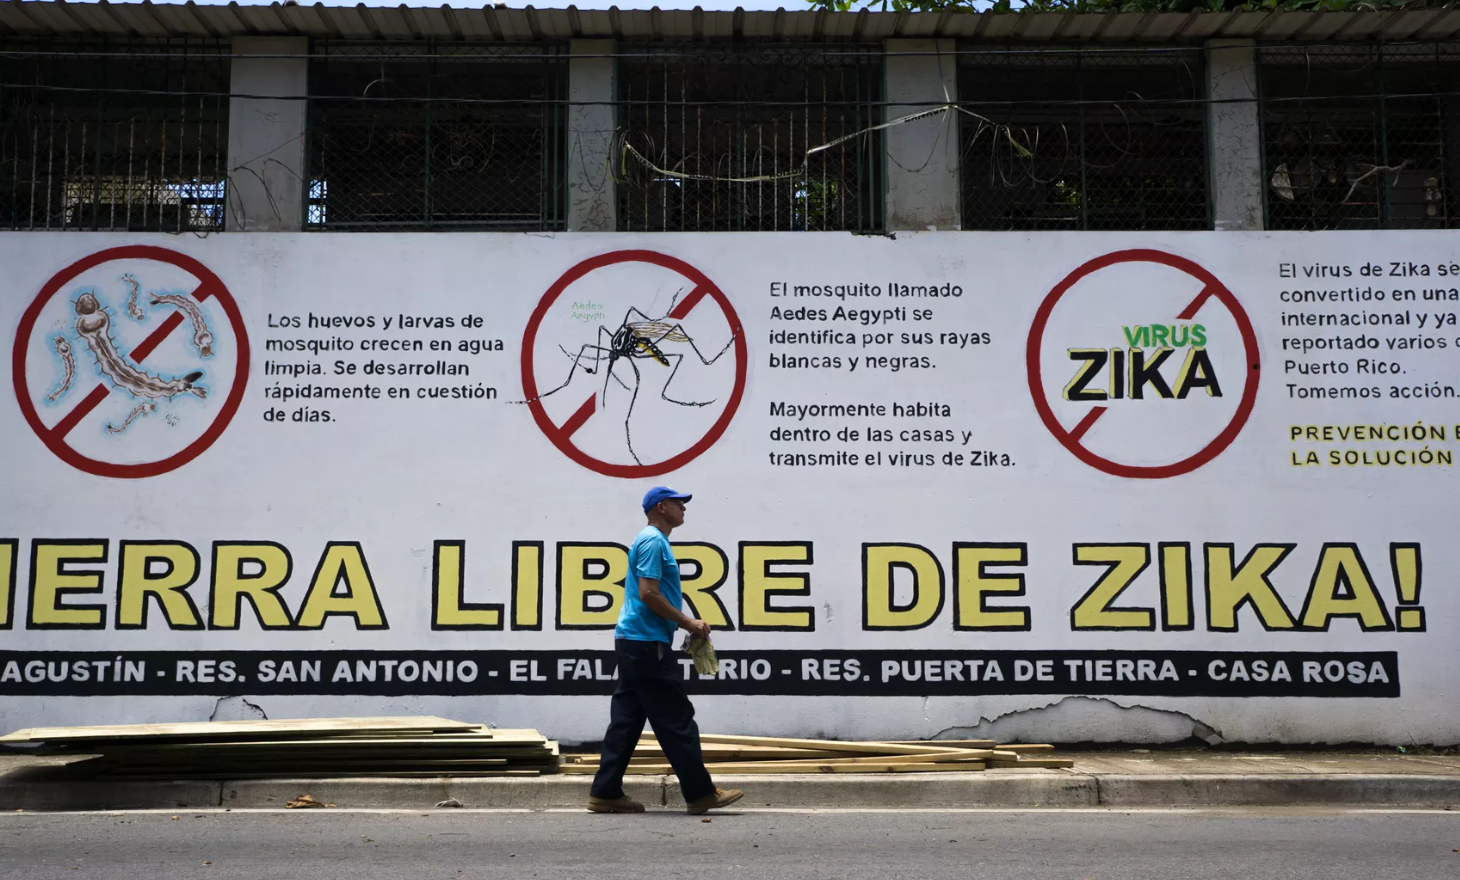 Cảnh báo virus Zika ở Puerto Rico, tháng 8.2016. Ảnh: Getty Images